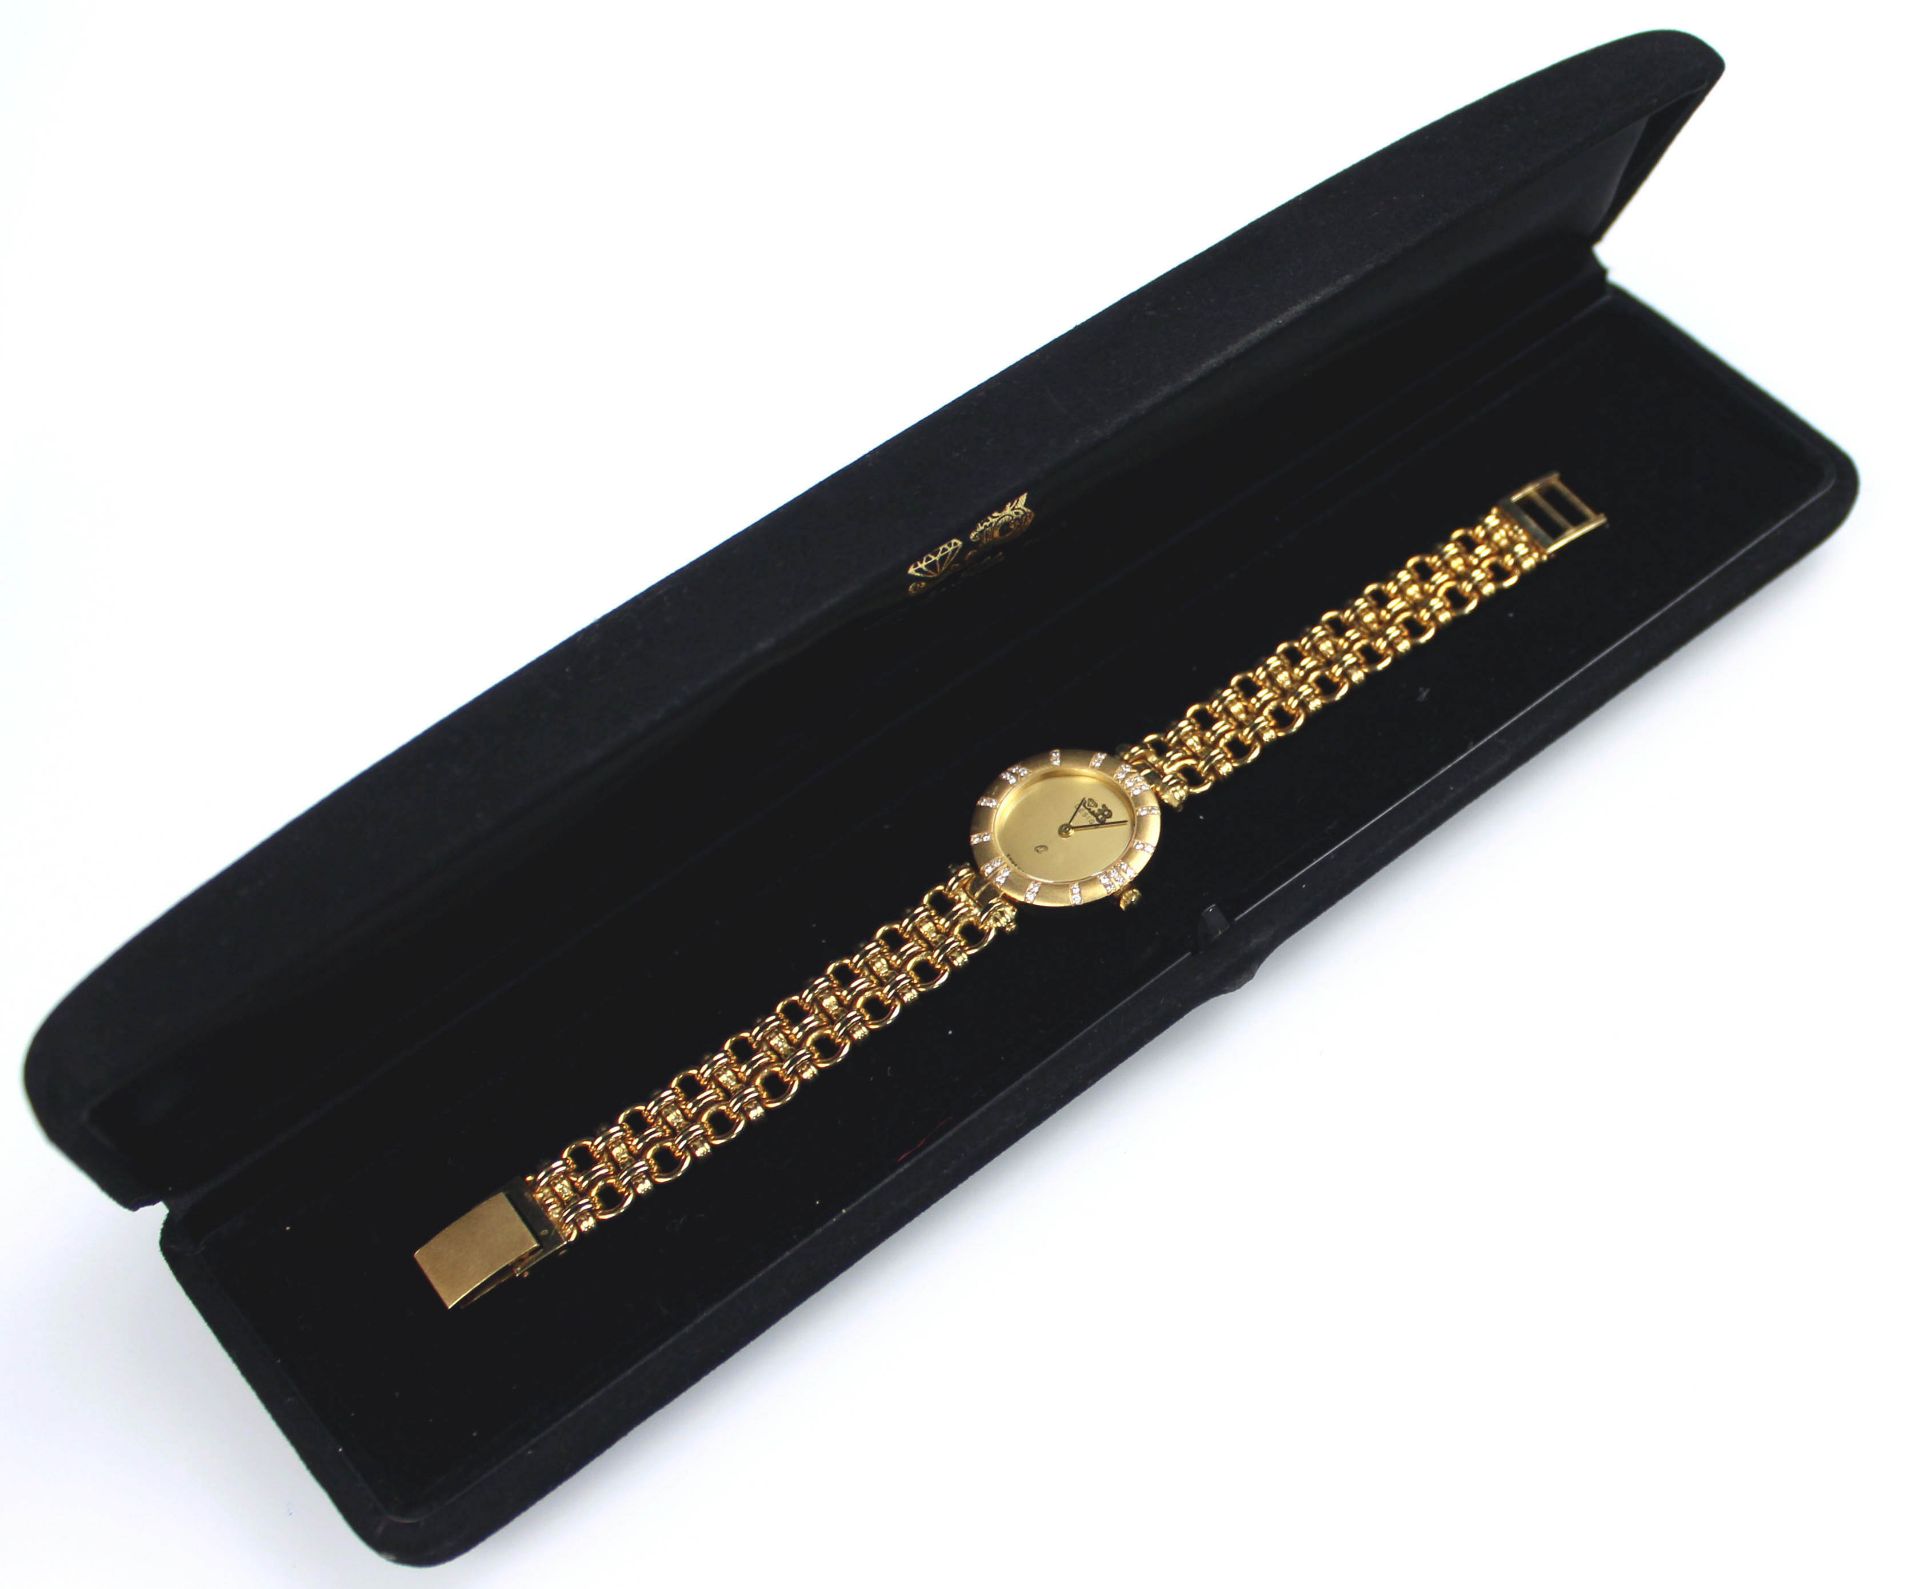 Schmuck Armbanduhr Gelb Gold 750, besetzt mit 36 kleinen Brillanten.58,5 Gramm Gesamtgewicht. - Bild 4 aus 11